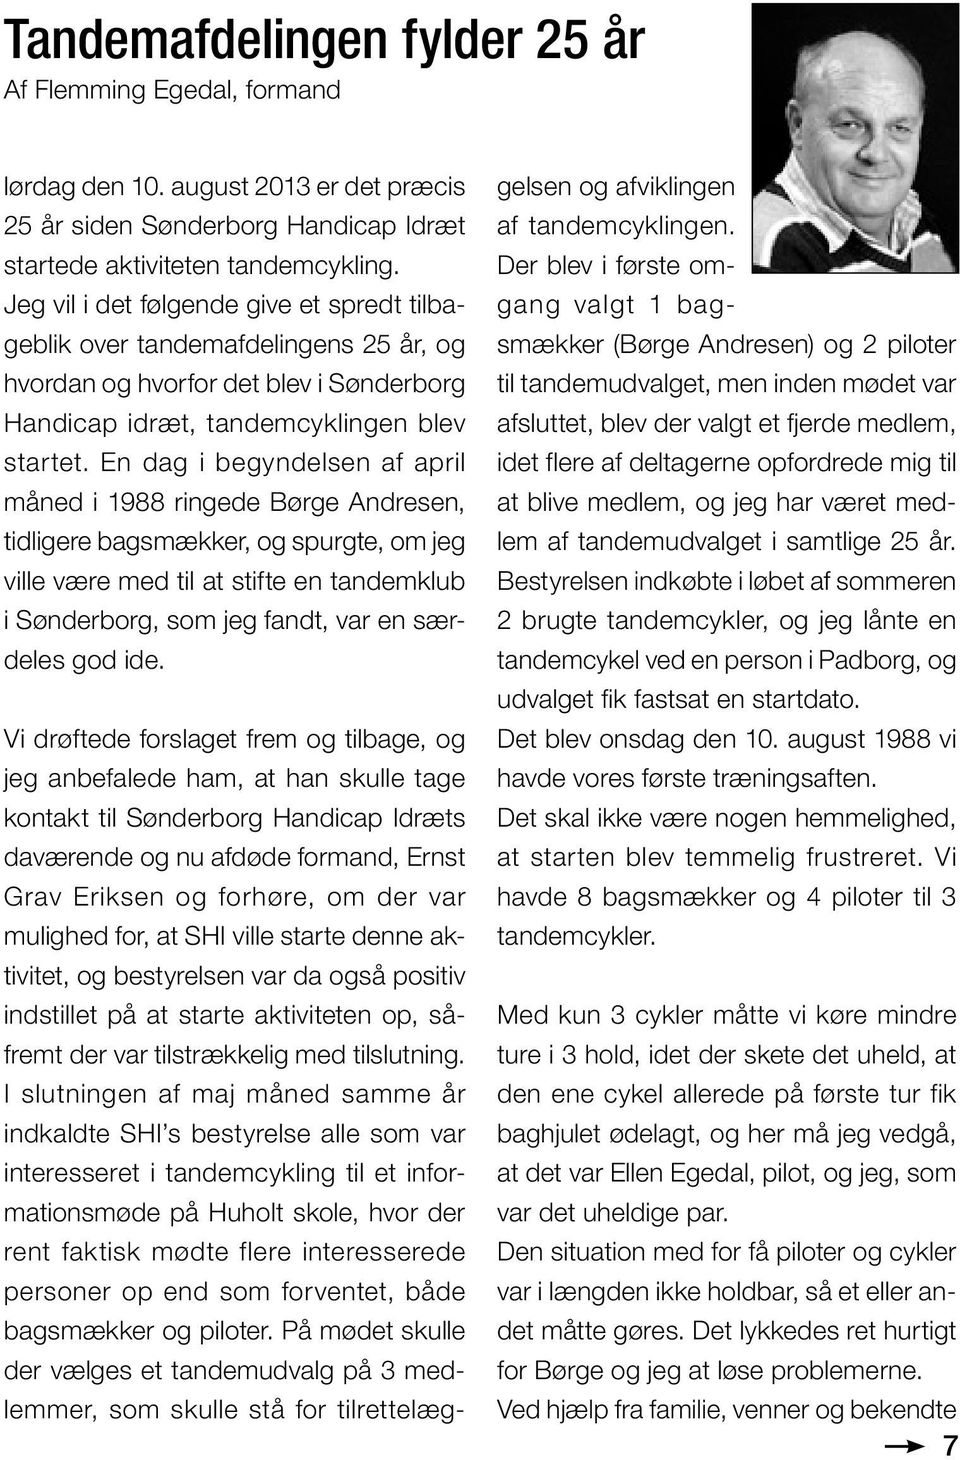 En dag i begyndelsen af april måned i 1988 ringede Børge Andresen, tidligere bagsmækker, og spurgte, om jeg ville være med til at stifte en tandemklub i Sønderborg, som jeg fandt, var en særdeles god